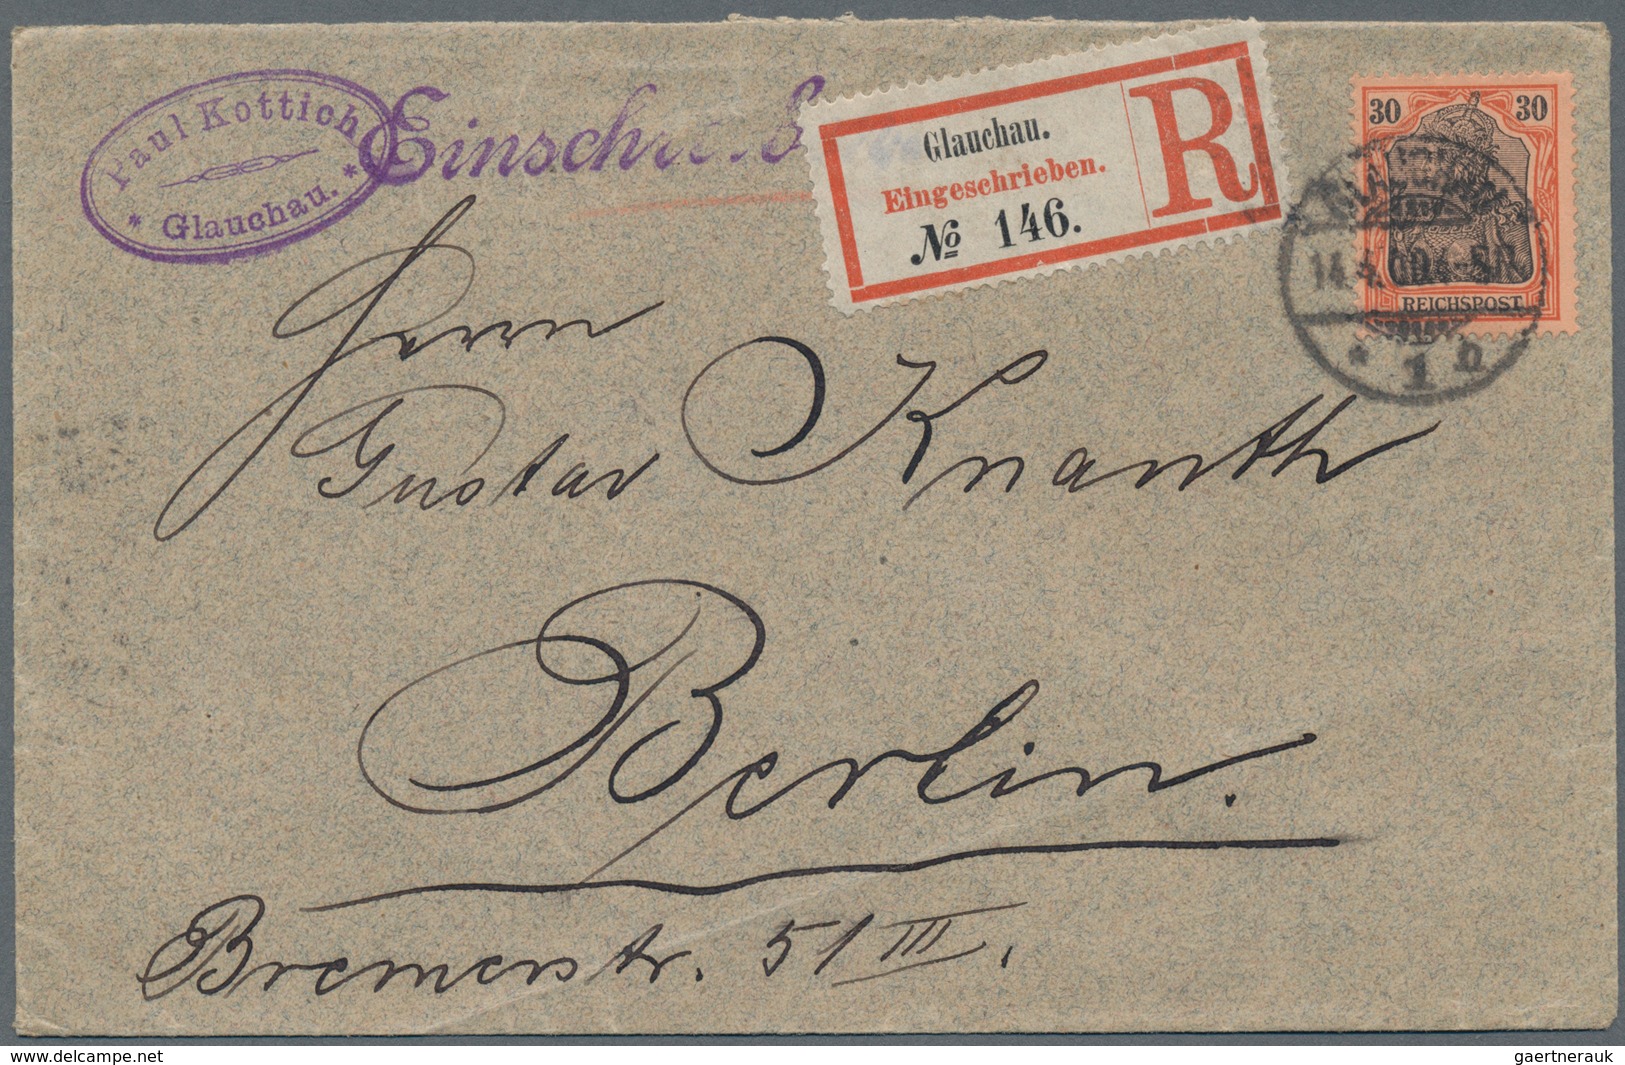 Deutsches Reich: 1882/1944, kleiner Posten von ca. 100 Briefe, Karten, Ansichtskarten und überwiegen